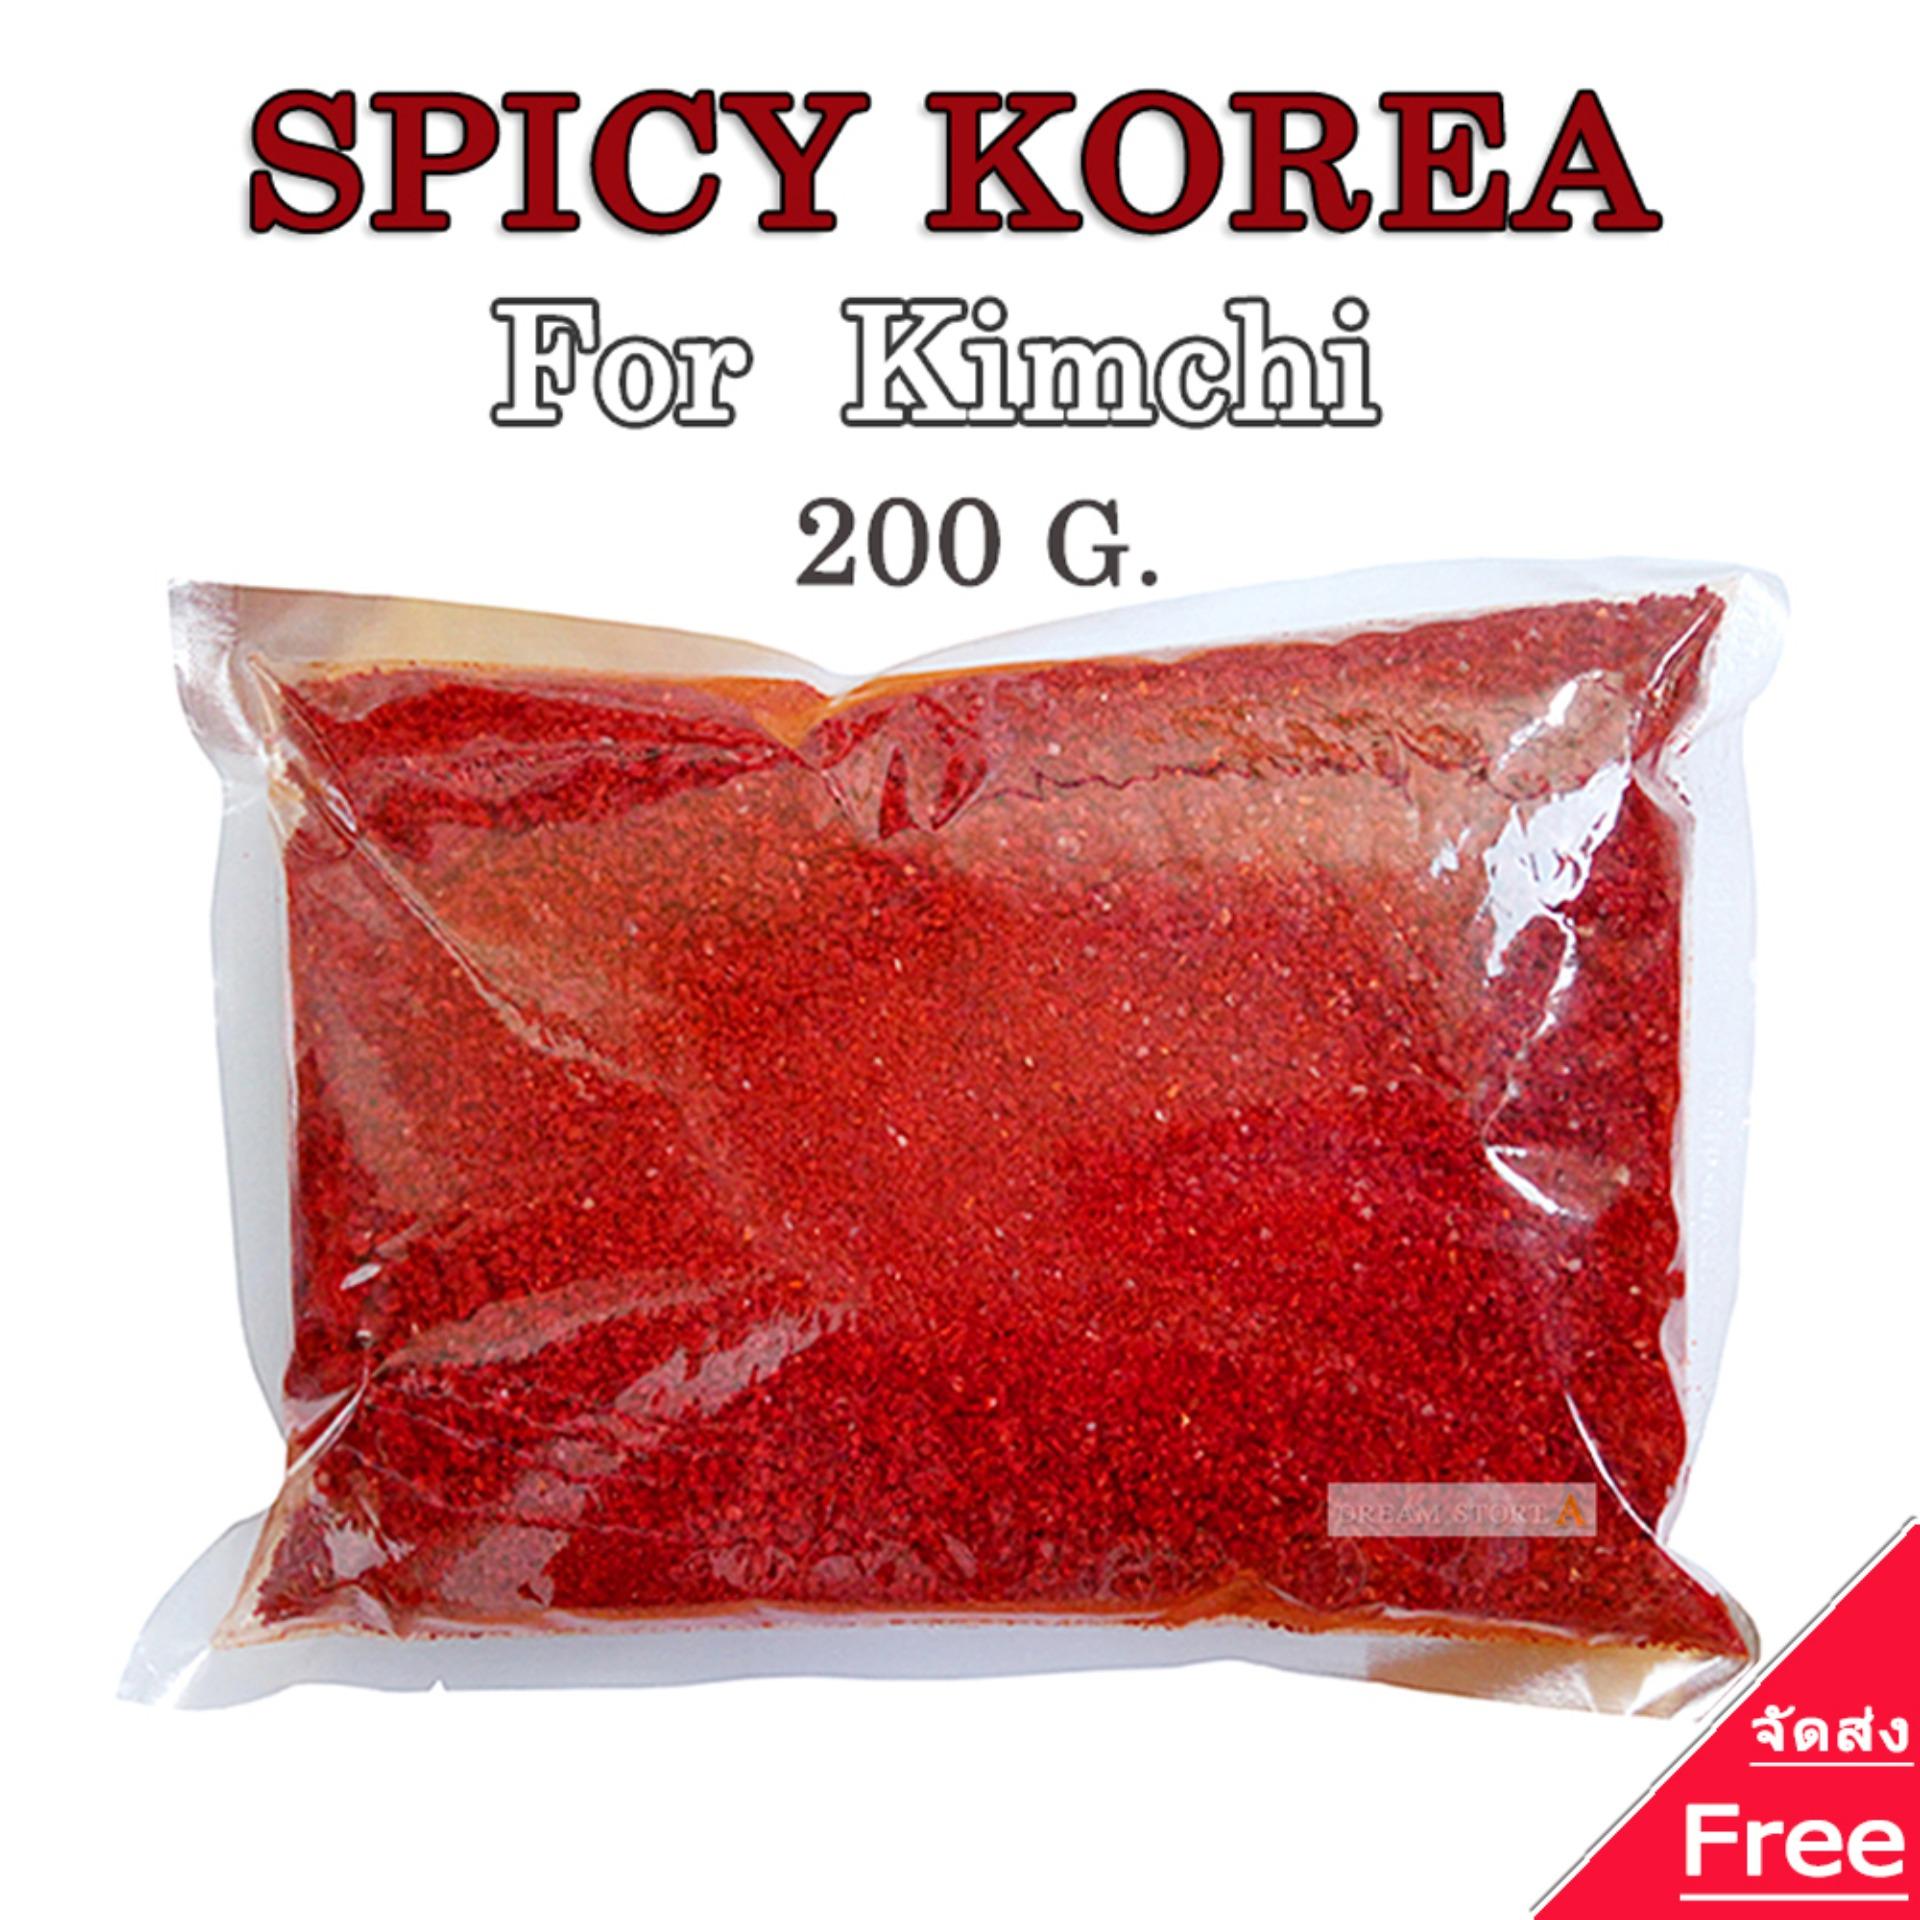 Spicy Korea พริกป่นเกาหลี สำหรับทำกิมจิและอาหาร ชนิดบดหยาบ 200 กรัม พริก เกาหลี